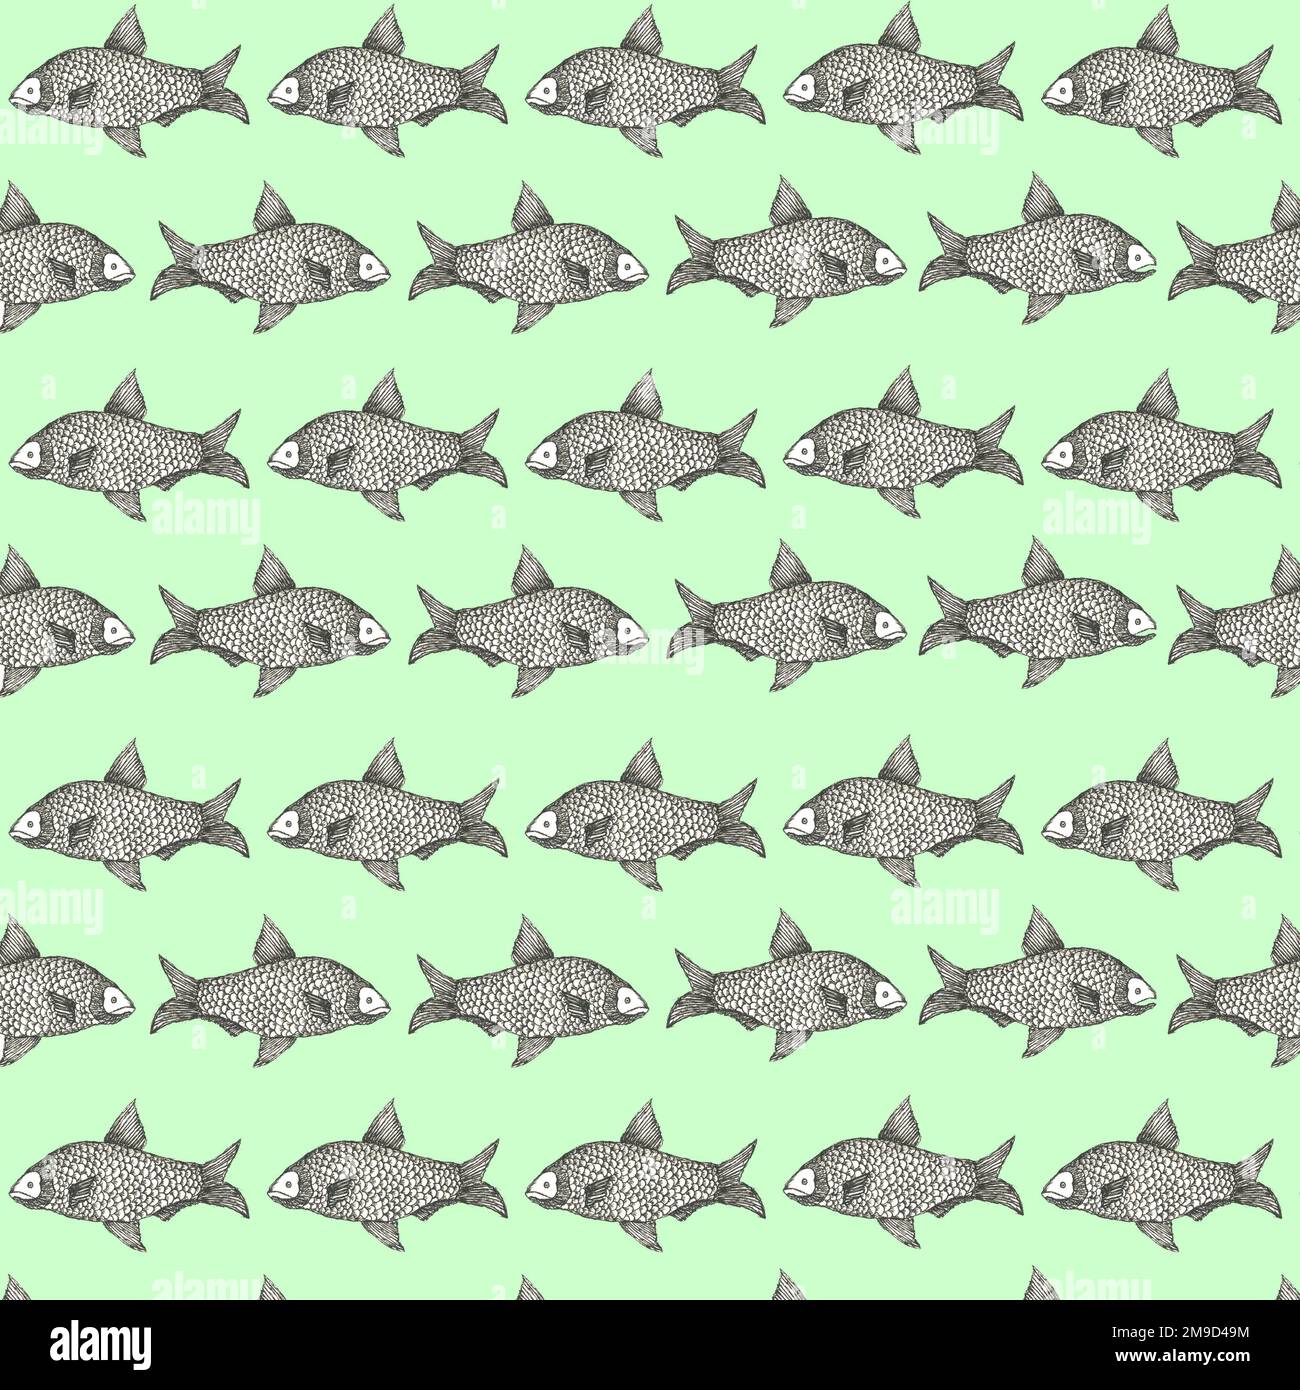 Grumpy fish pattern. Stock Photo